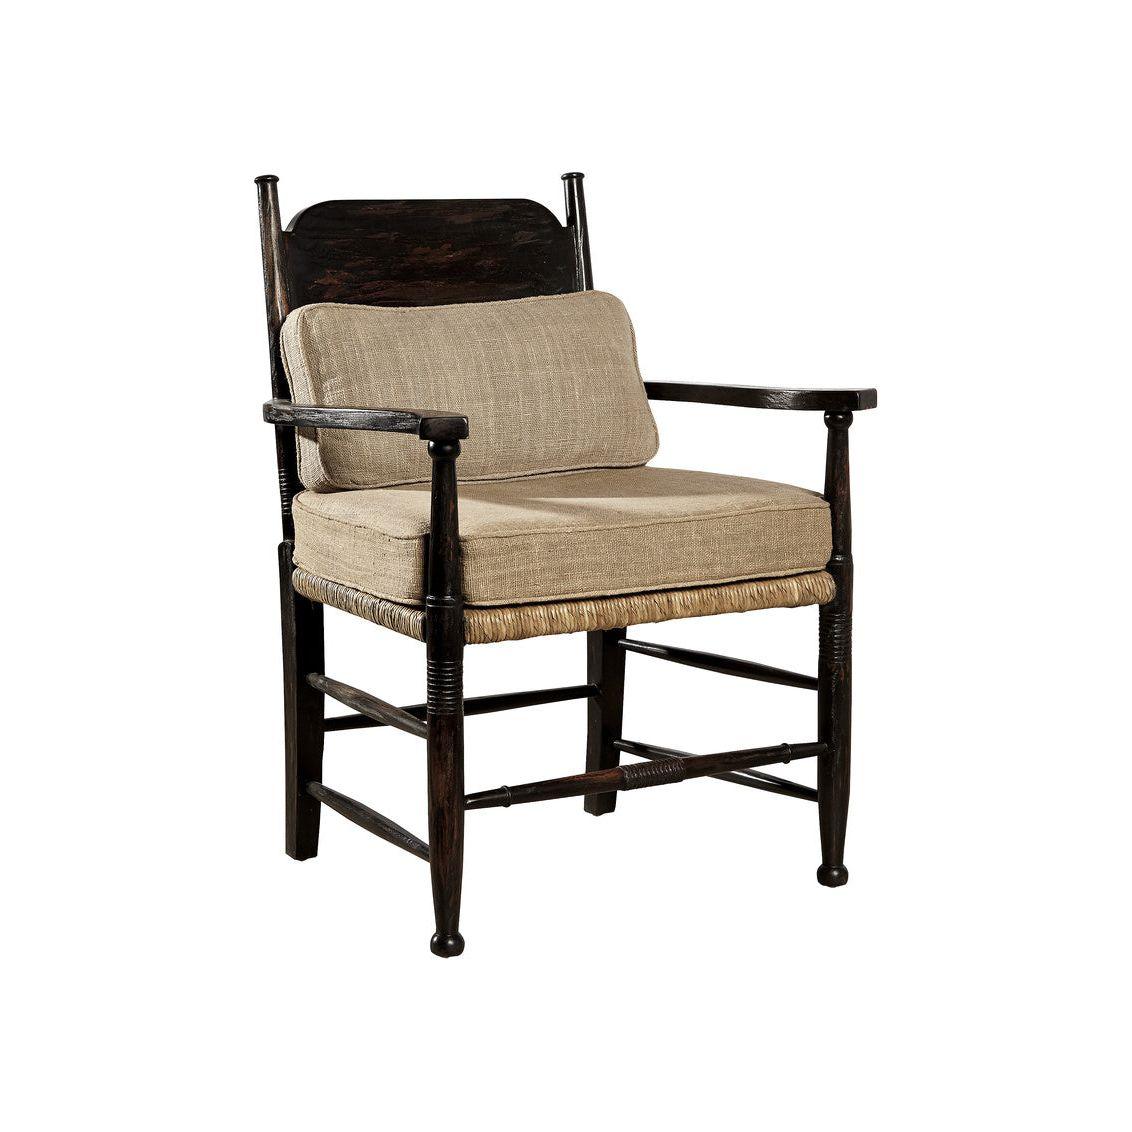 Chatham Chair - Braden's Furniture